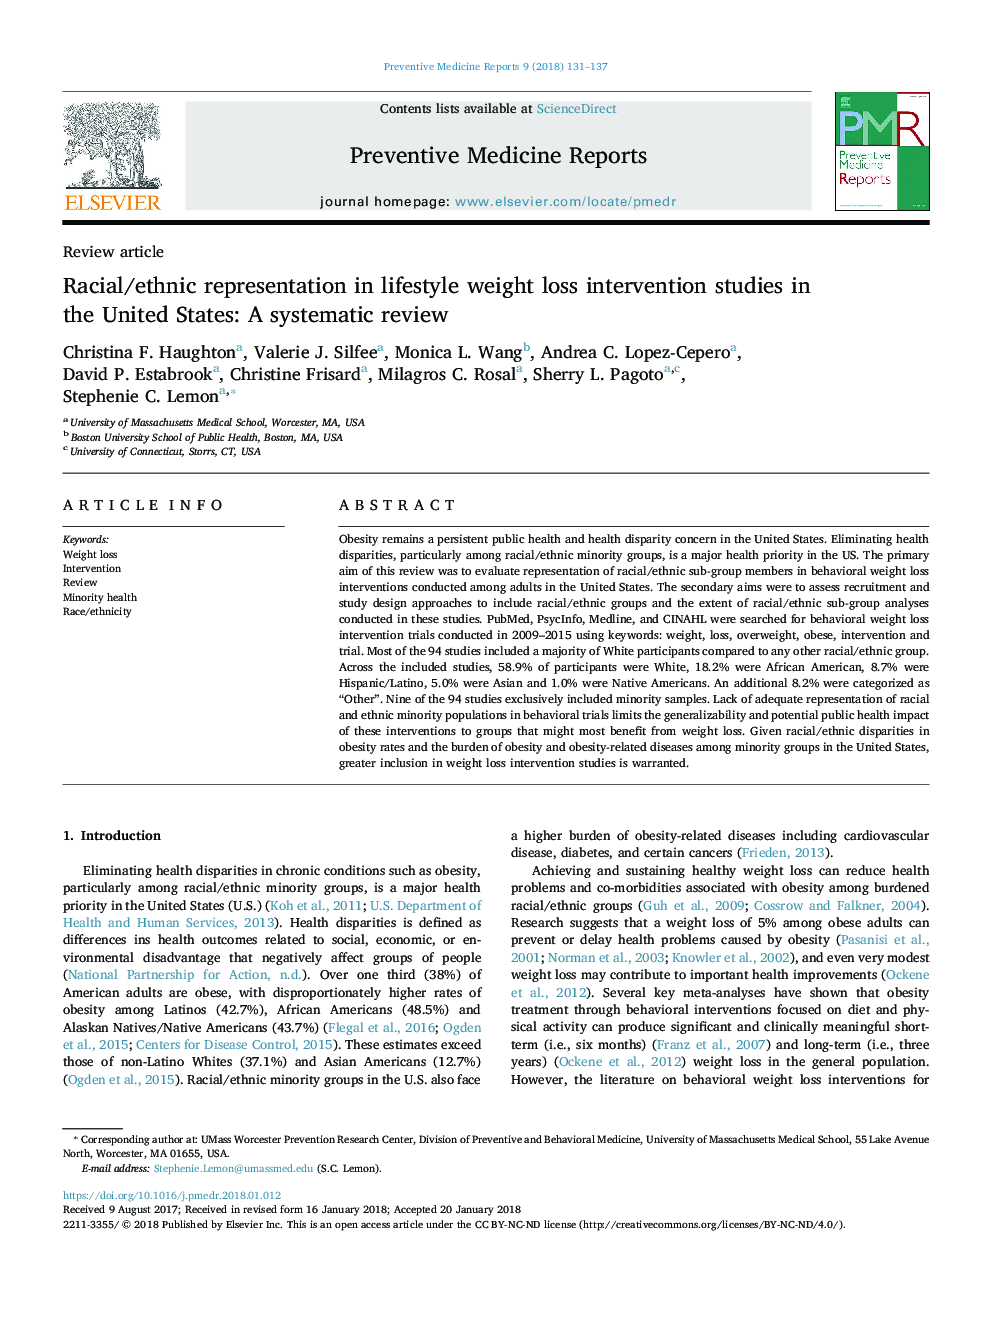 بررسی نژاد / قومی در مطالعات مداخله ای در مورد کاهش وزن سبک زندگی در ایالات متحده: یک بررسی سیستماتیک 